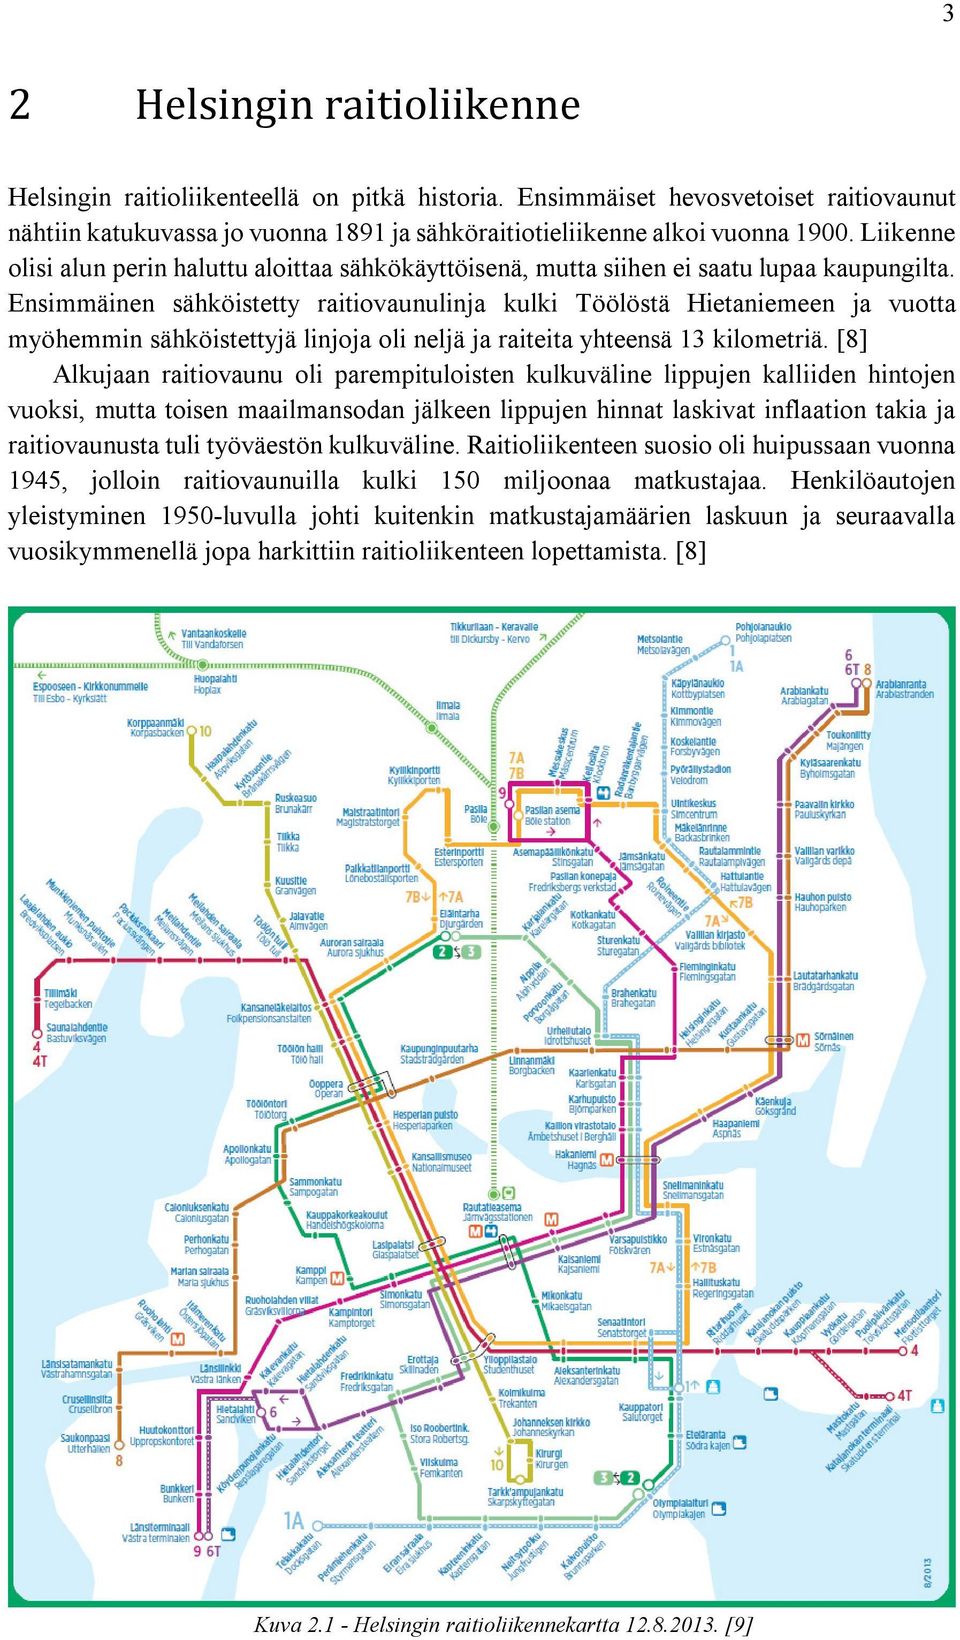 Ensimmäinen sähköistetty raitiovaunulinja kulki Töölöstä Hietaniemeen ja vuotta myöhemmin sähköistettyjä linjoja oli neljä ja raiteita yhteensä 13 kilometriä.